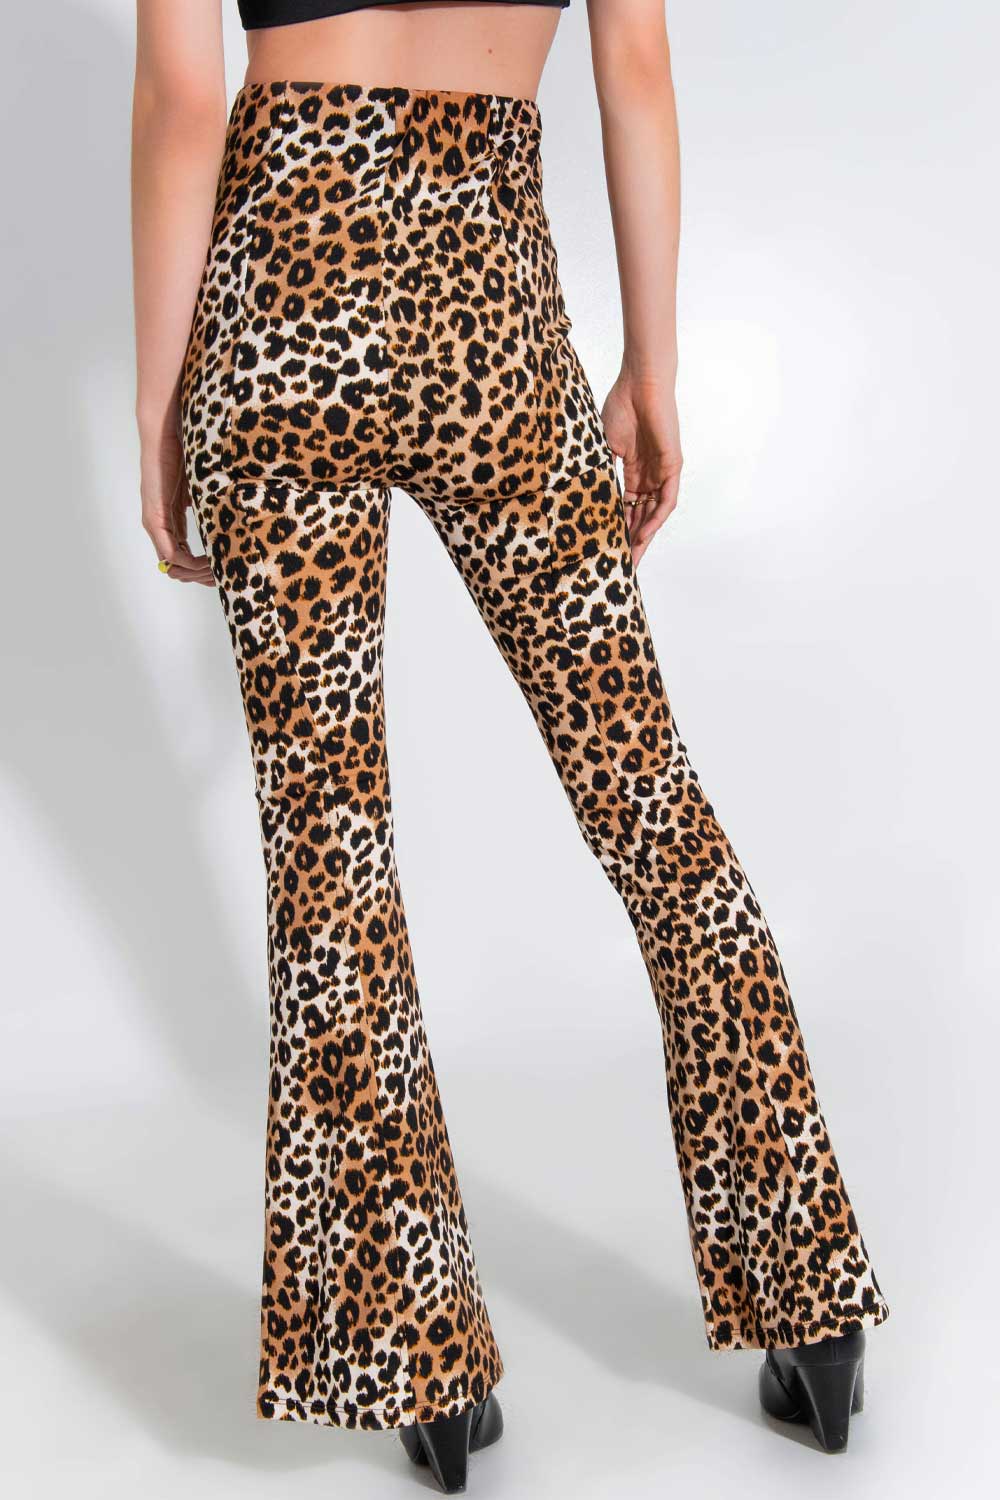 Legging de estampado leopardo, fit flare, cintura alta elástica y raya frontal con aberturas en bajo.